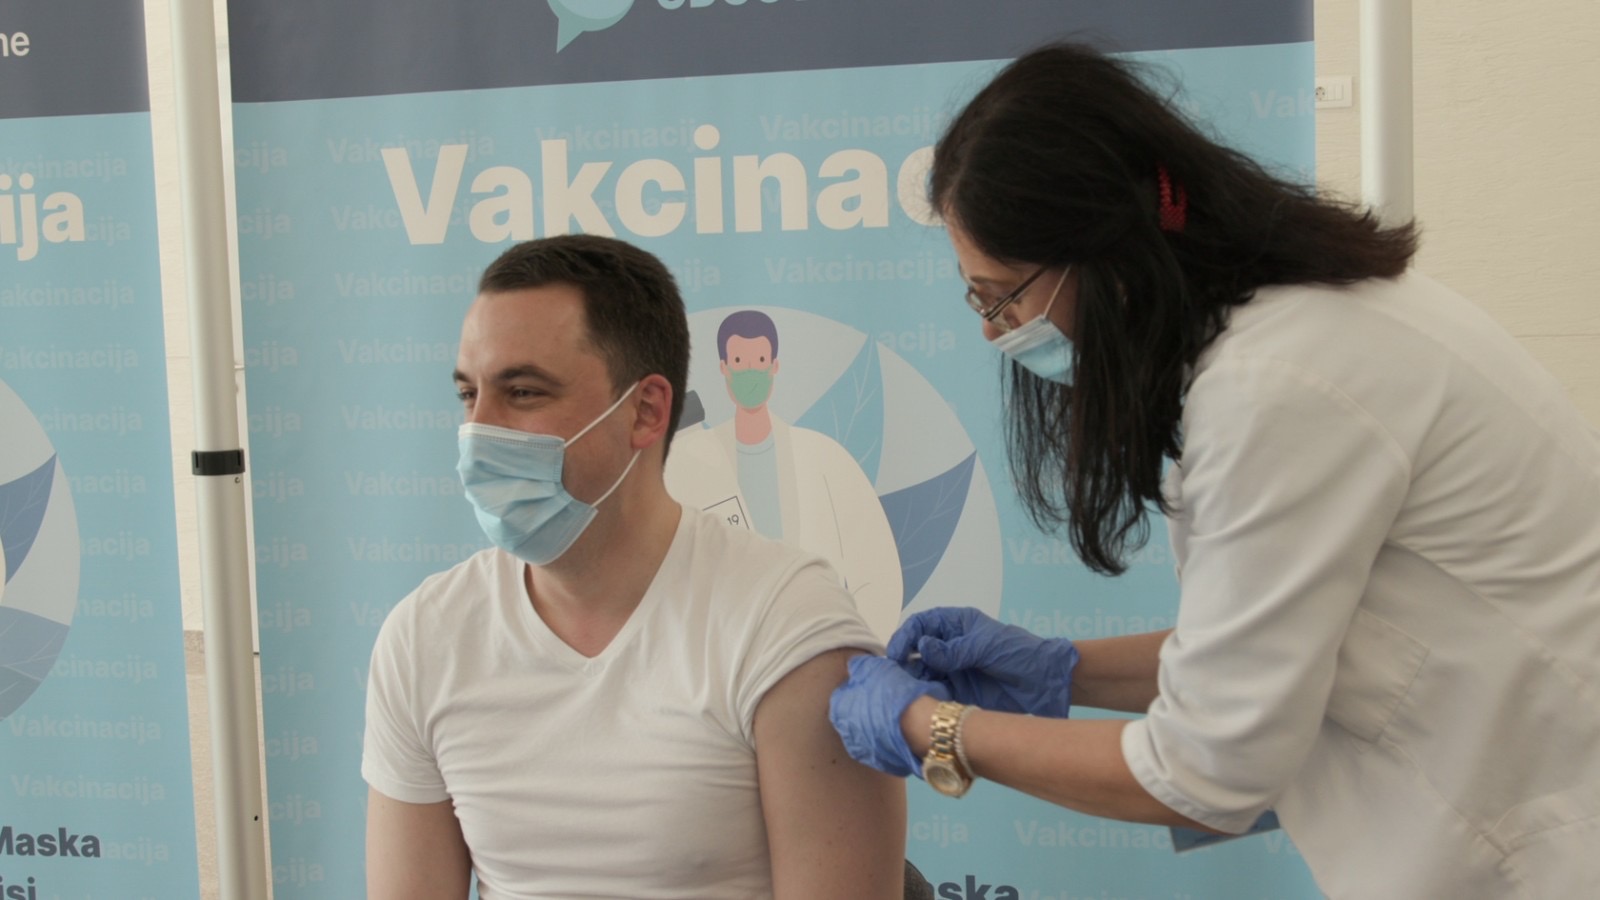 Vakcinisao se gradonačelnik Podgorice dr Ivan Vuković